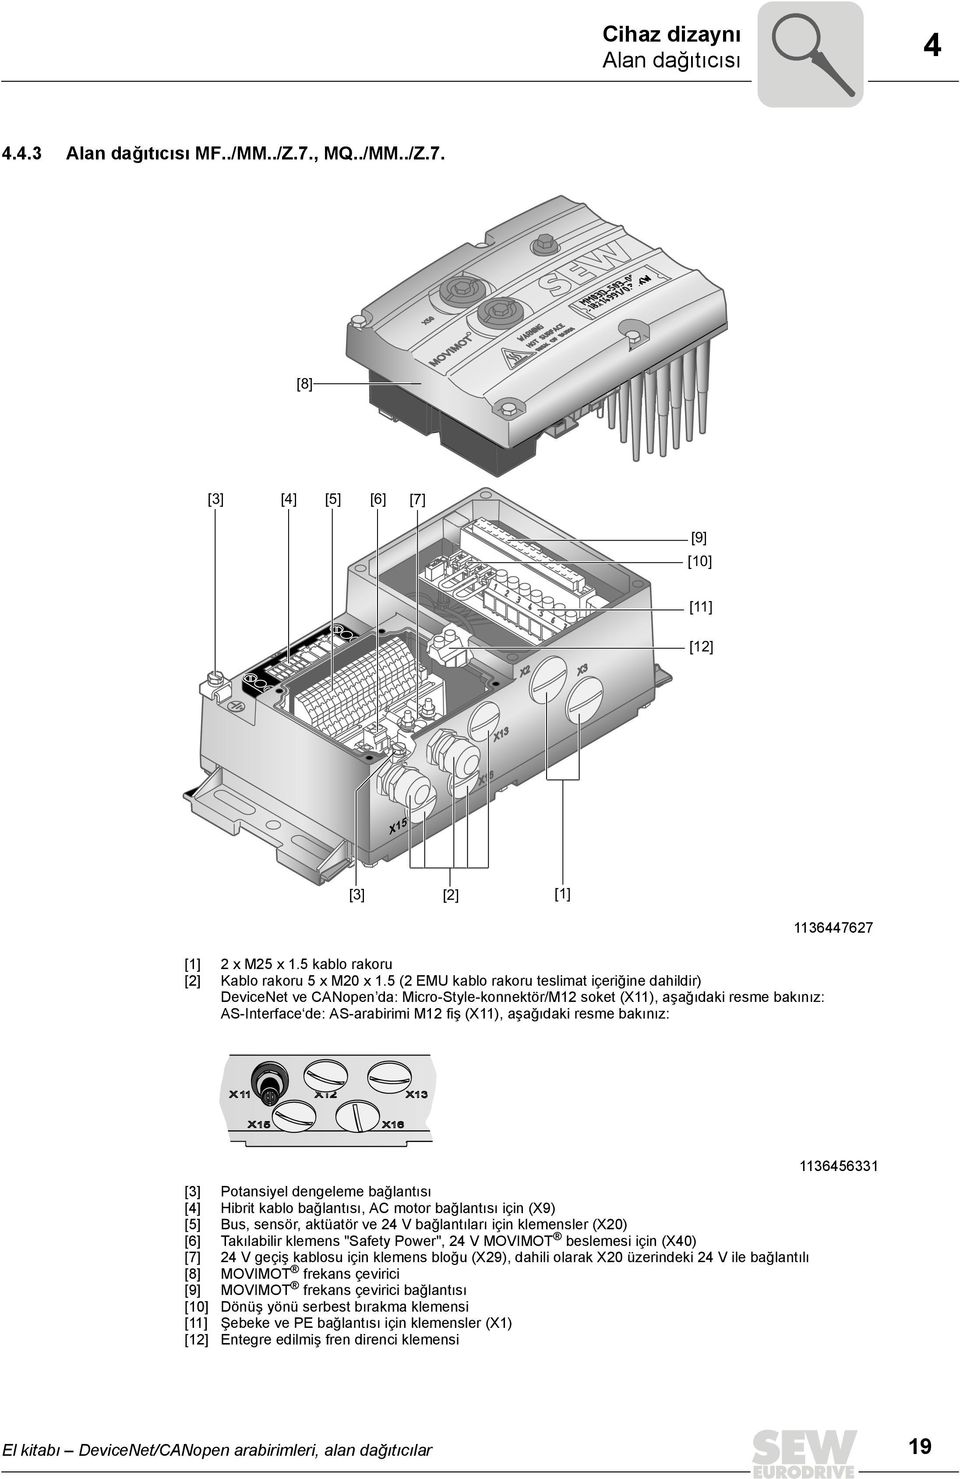 5 (2 EMU kablo rakoru teslimat içeriğine dahildir) DeviceNet ve CANopen da: Micro-Style-konnektör/M12 soket (X11), aşağıdaki resme bakınız: AS-Interface de: AS-arabirimi M12 fiş (X11), aşağıdaki